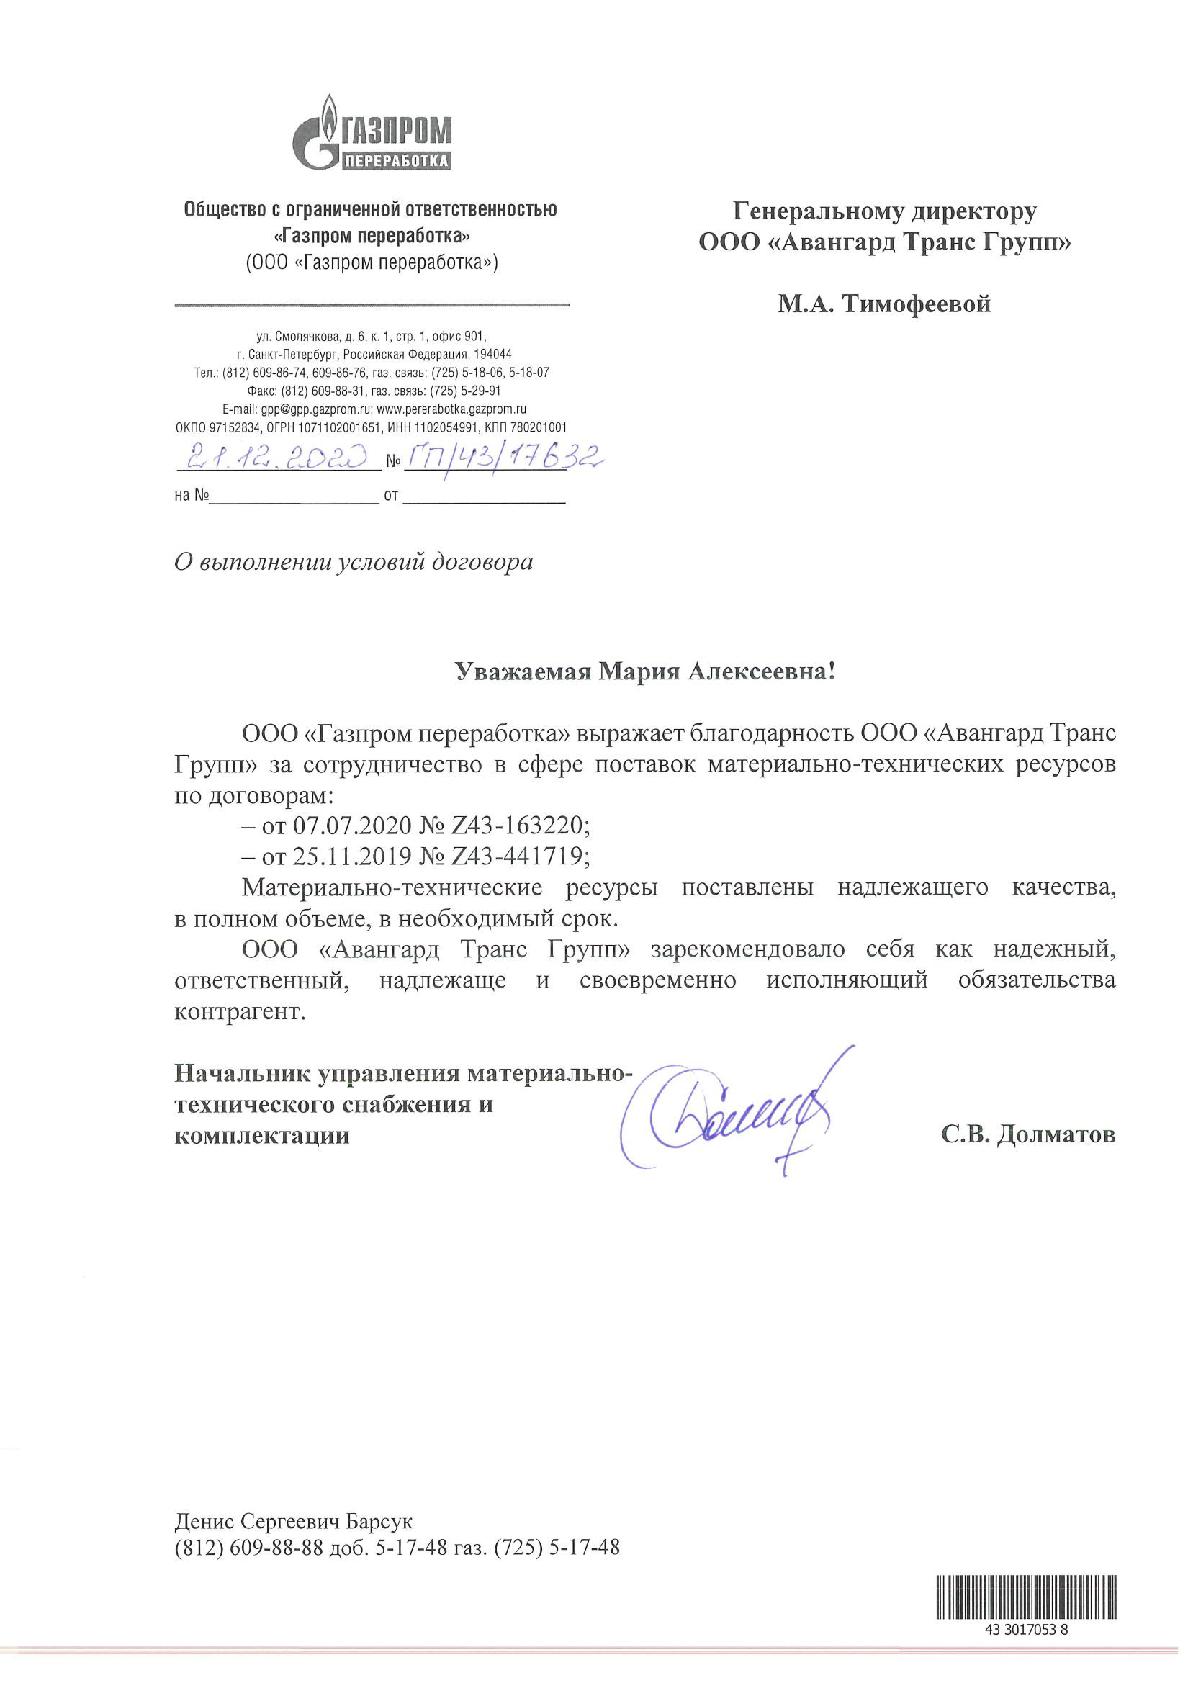 Отзыв к Договорам № Z43-163220 от 07.07.2020г. и № Z43-441719 от 25.11.2019г. от Газпром Переработка